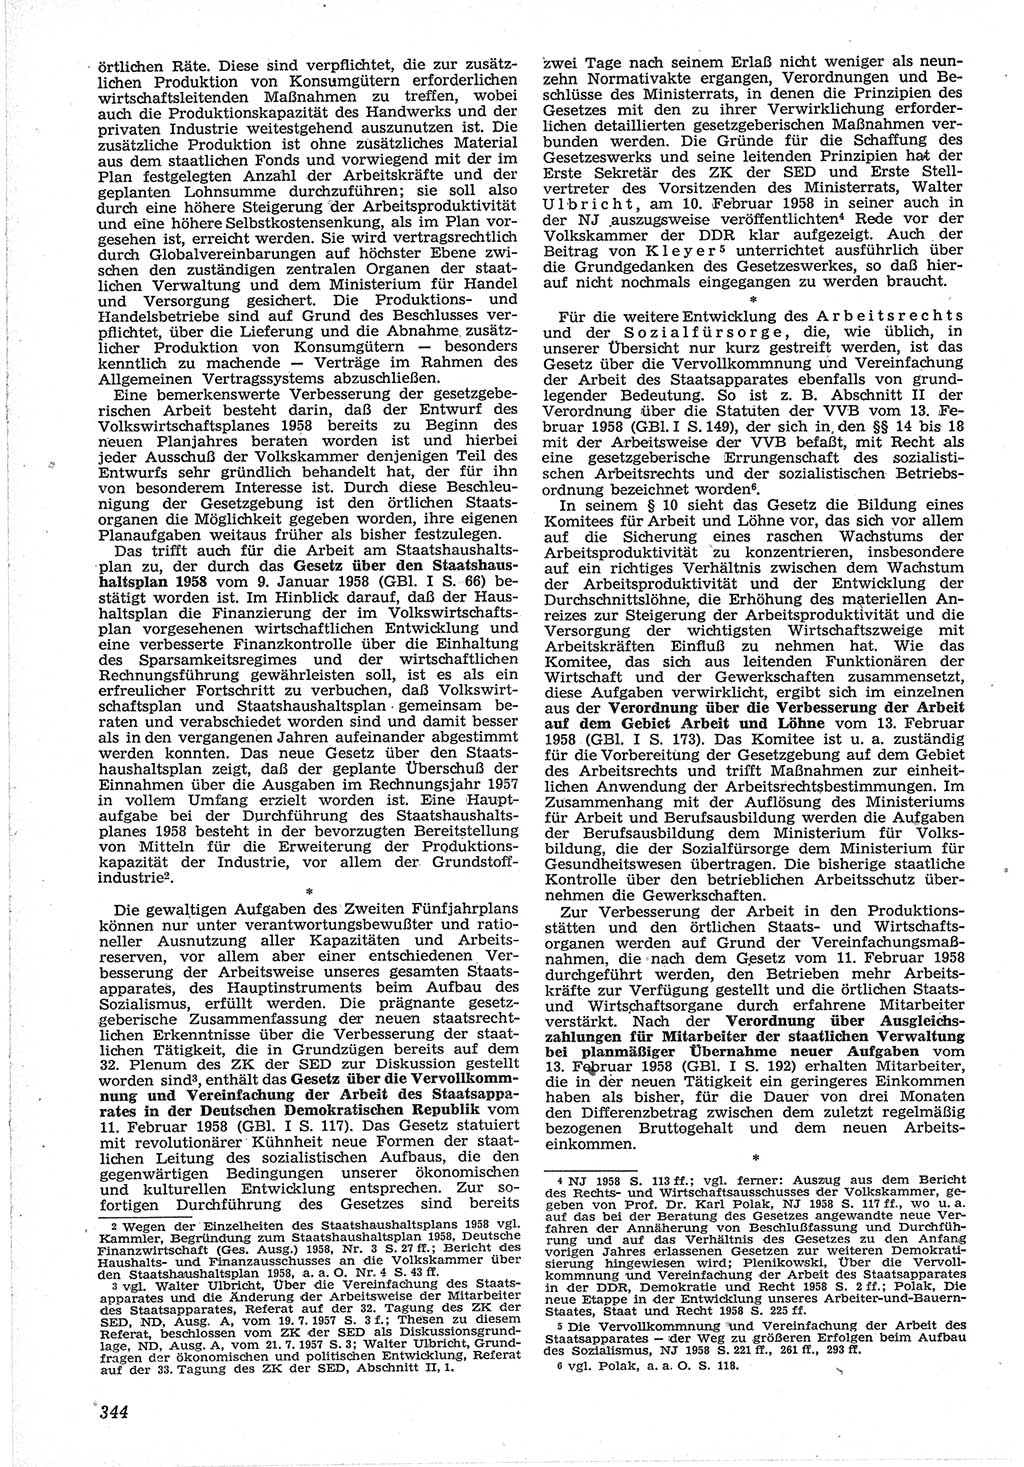 Neue Justiz (NJ), Zeitschrift für Recht und Rechtswissenschaft [Deutsche Demokratische Republik (DDR)], 12. Jahrgang 1958, Seite 344 (NJ DDR 1958, S. 344)